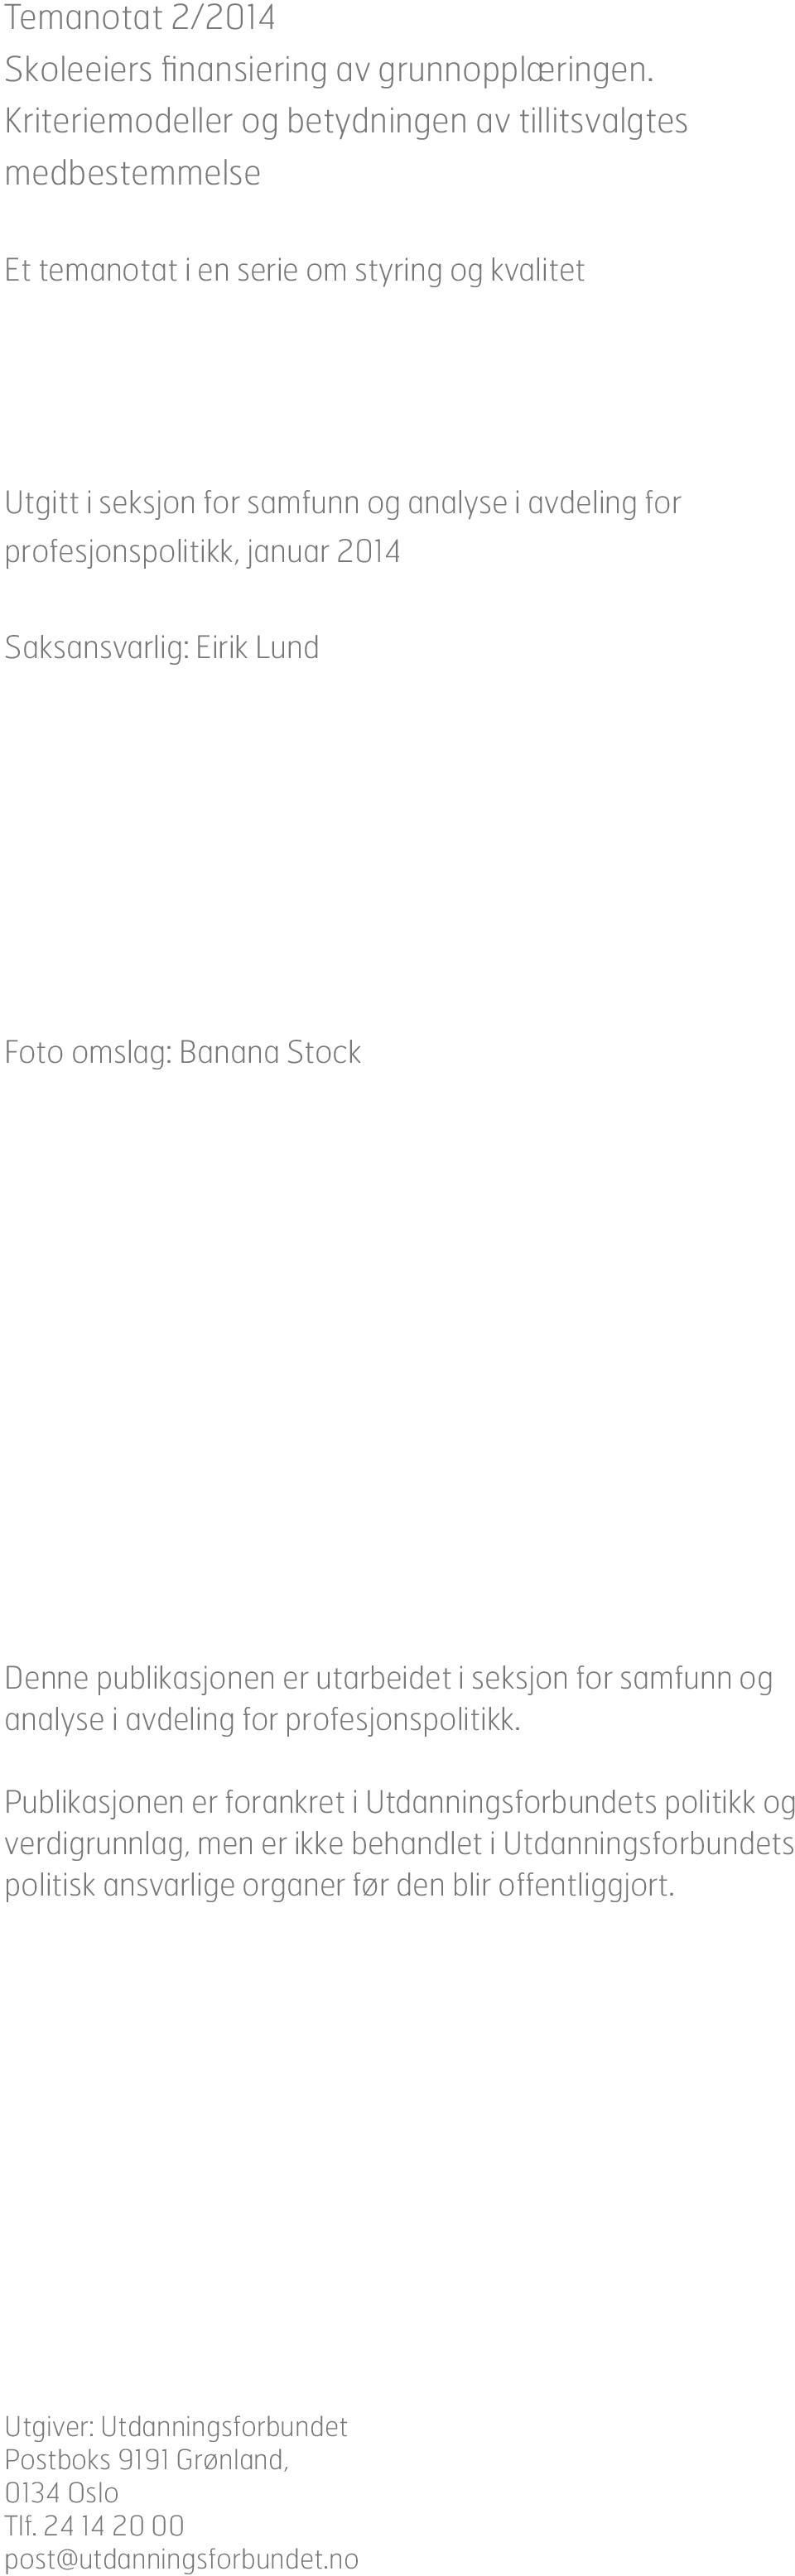 profesjonspolitikk, januar 2014 Saksansvarlig: Eirik Lund Foto omslag: Banana Stock Denne publikasjonen er utarbeidet i seksjon for samfunn og analyse i avdeling for